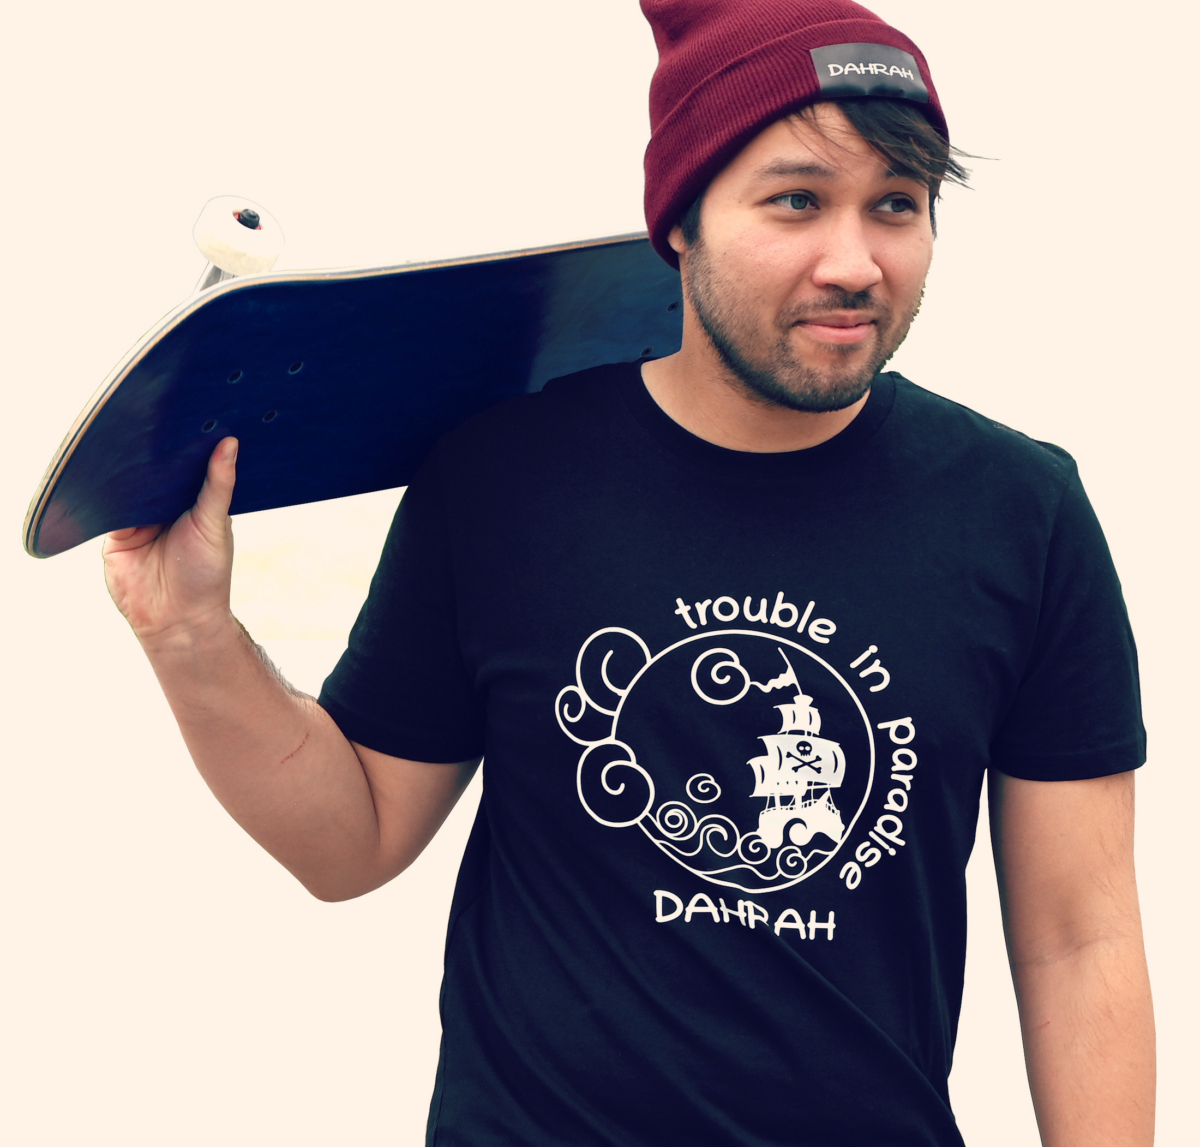 Dahrah Darah unisex organic cotton T-shirt with print of a pirate ship.